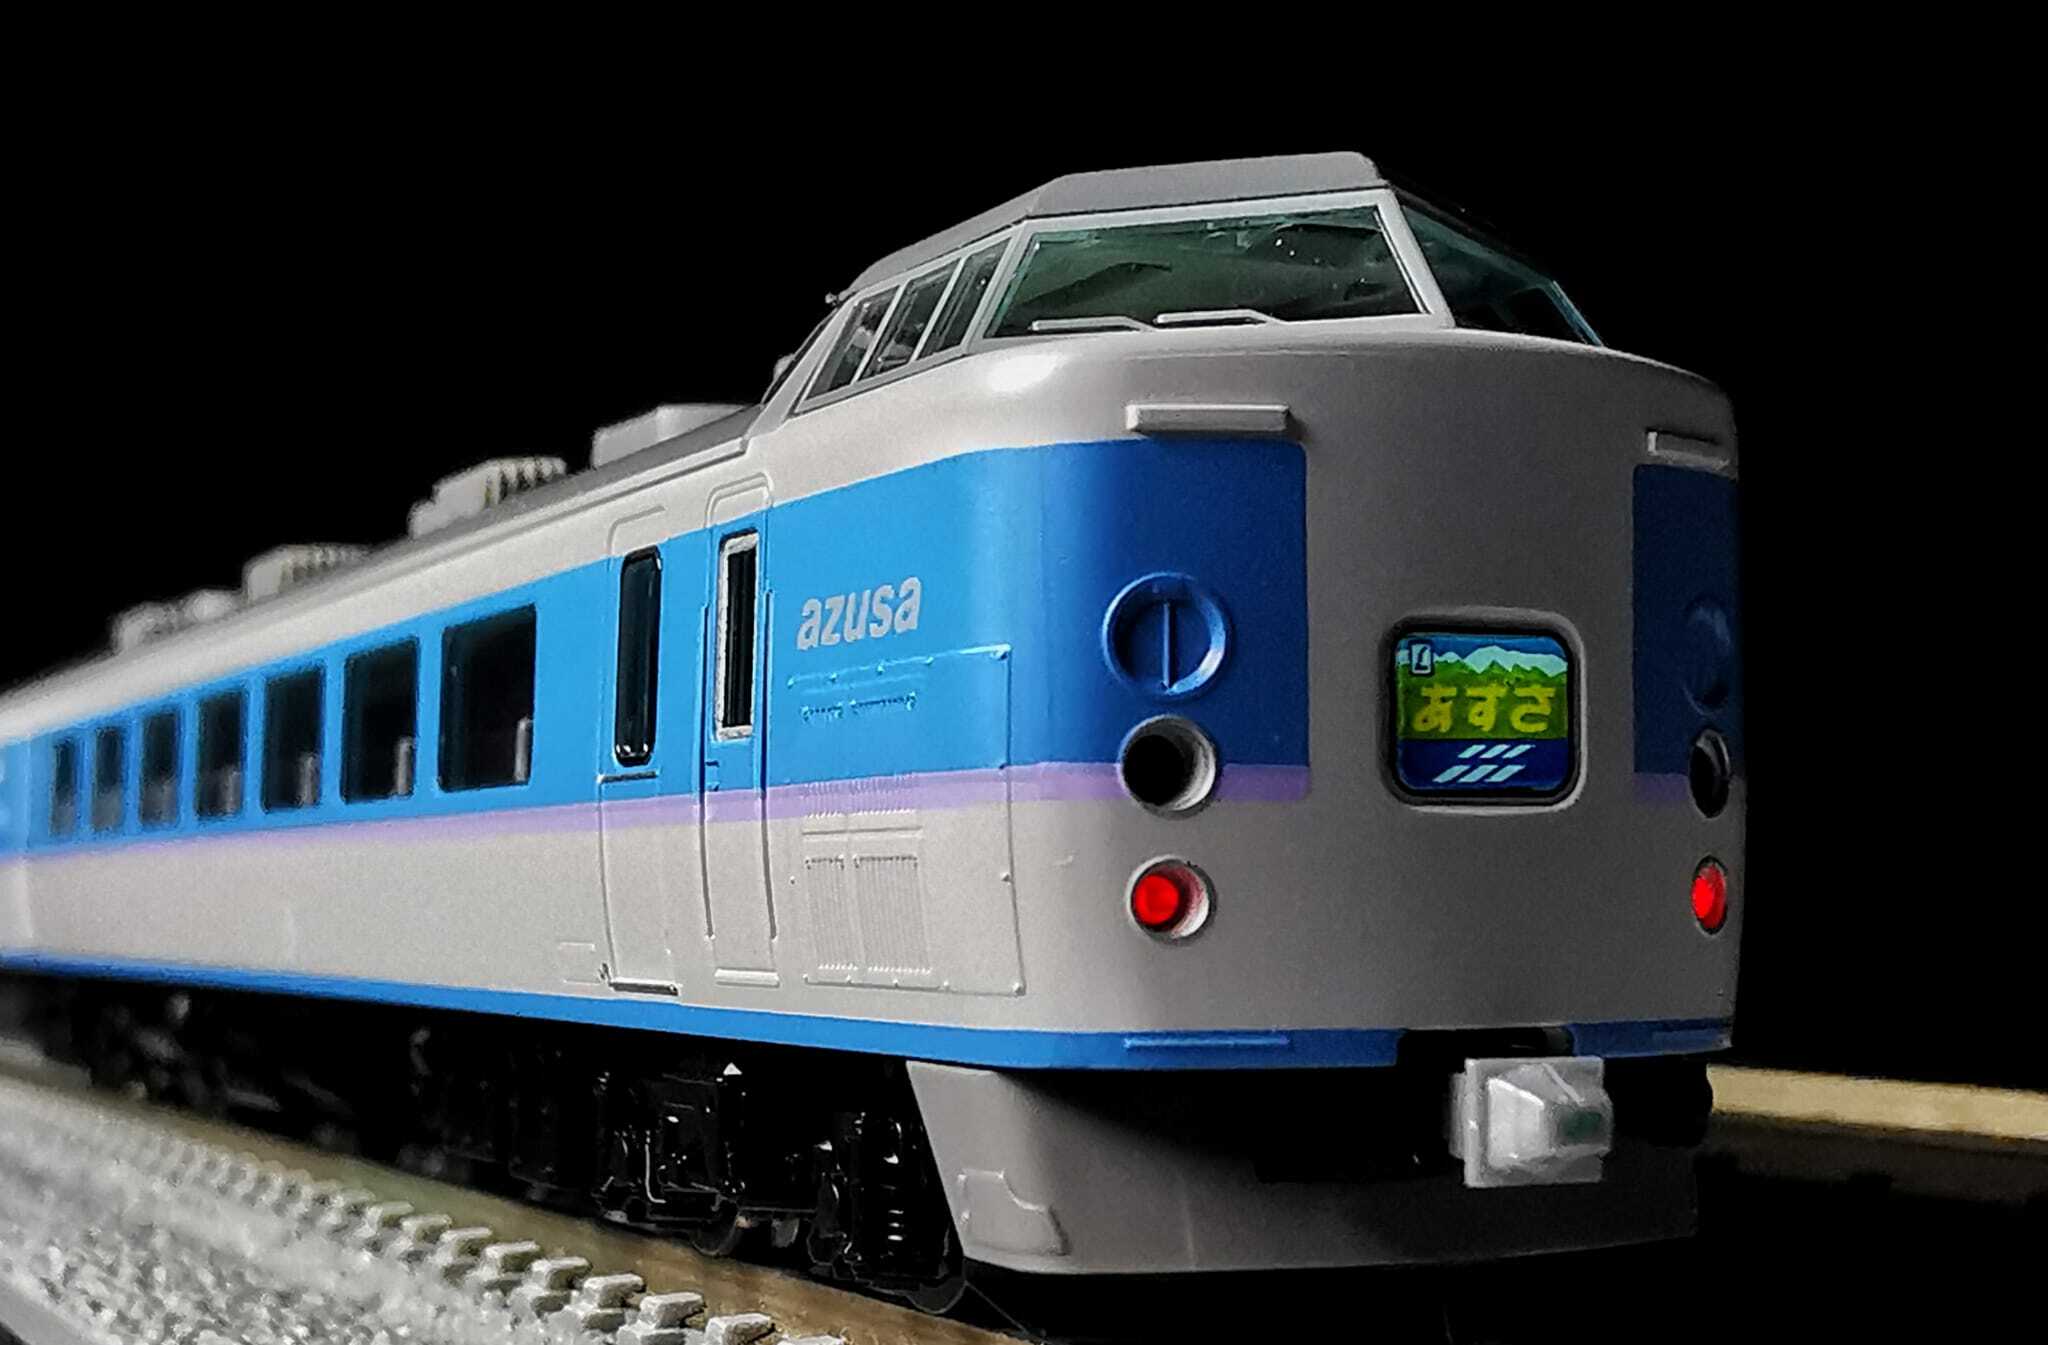 鉄道模型TOMIX  98797 98798 JR 189系特急電車(あずさ)11両